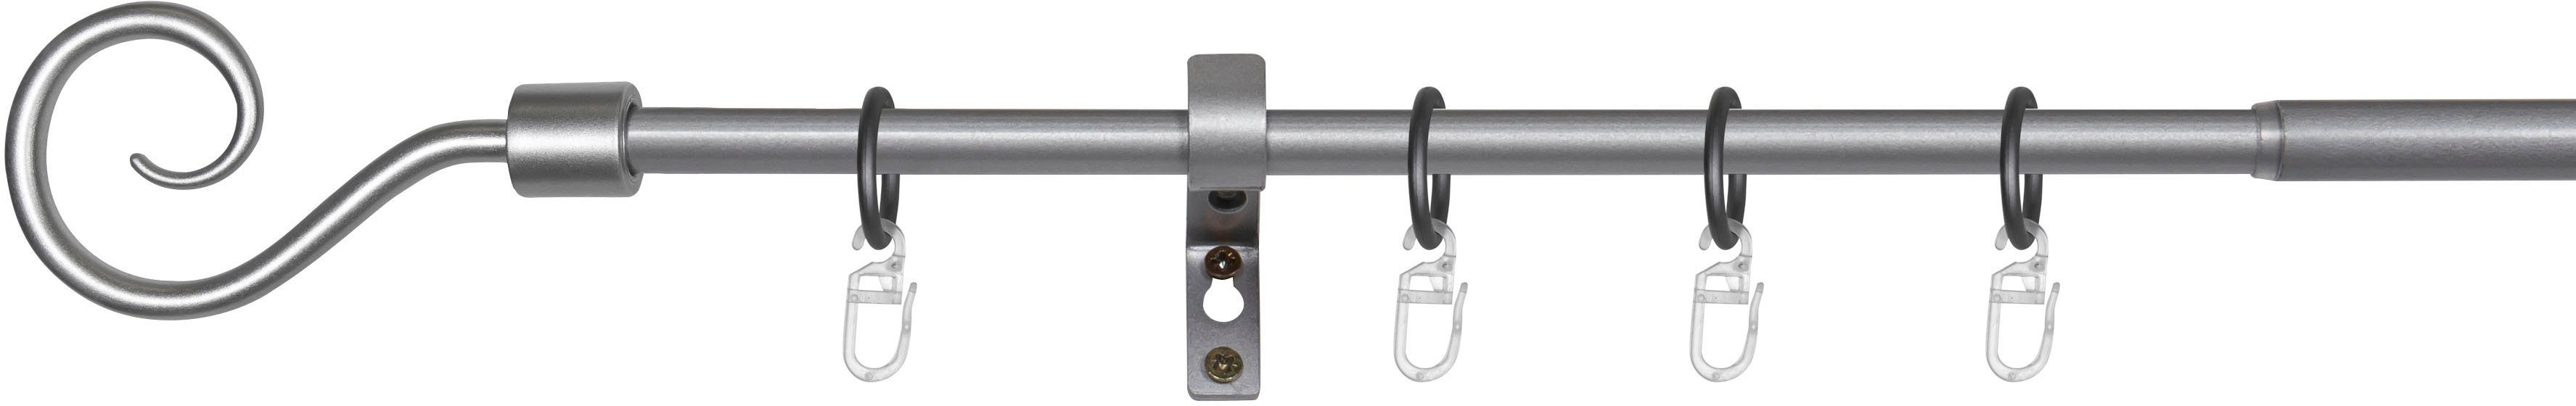 Gardinenstange Hook, mydeco, 1-läufig, ausziehbar, mit Bohren, verschraubt,  Aluminium